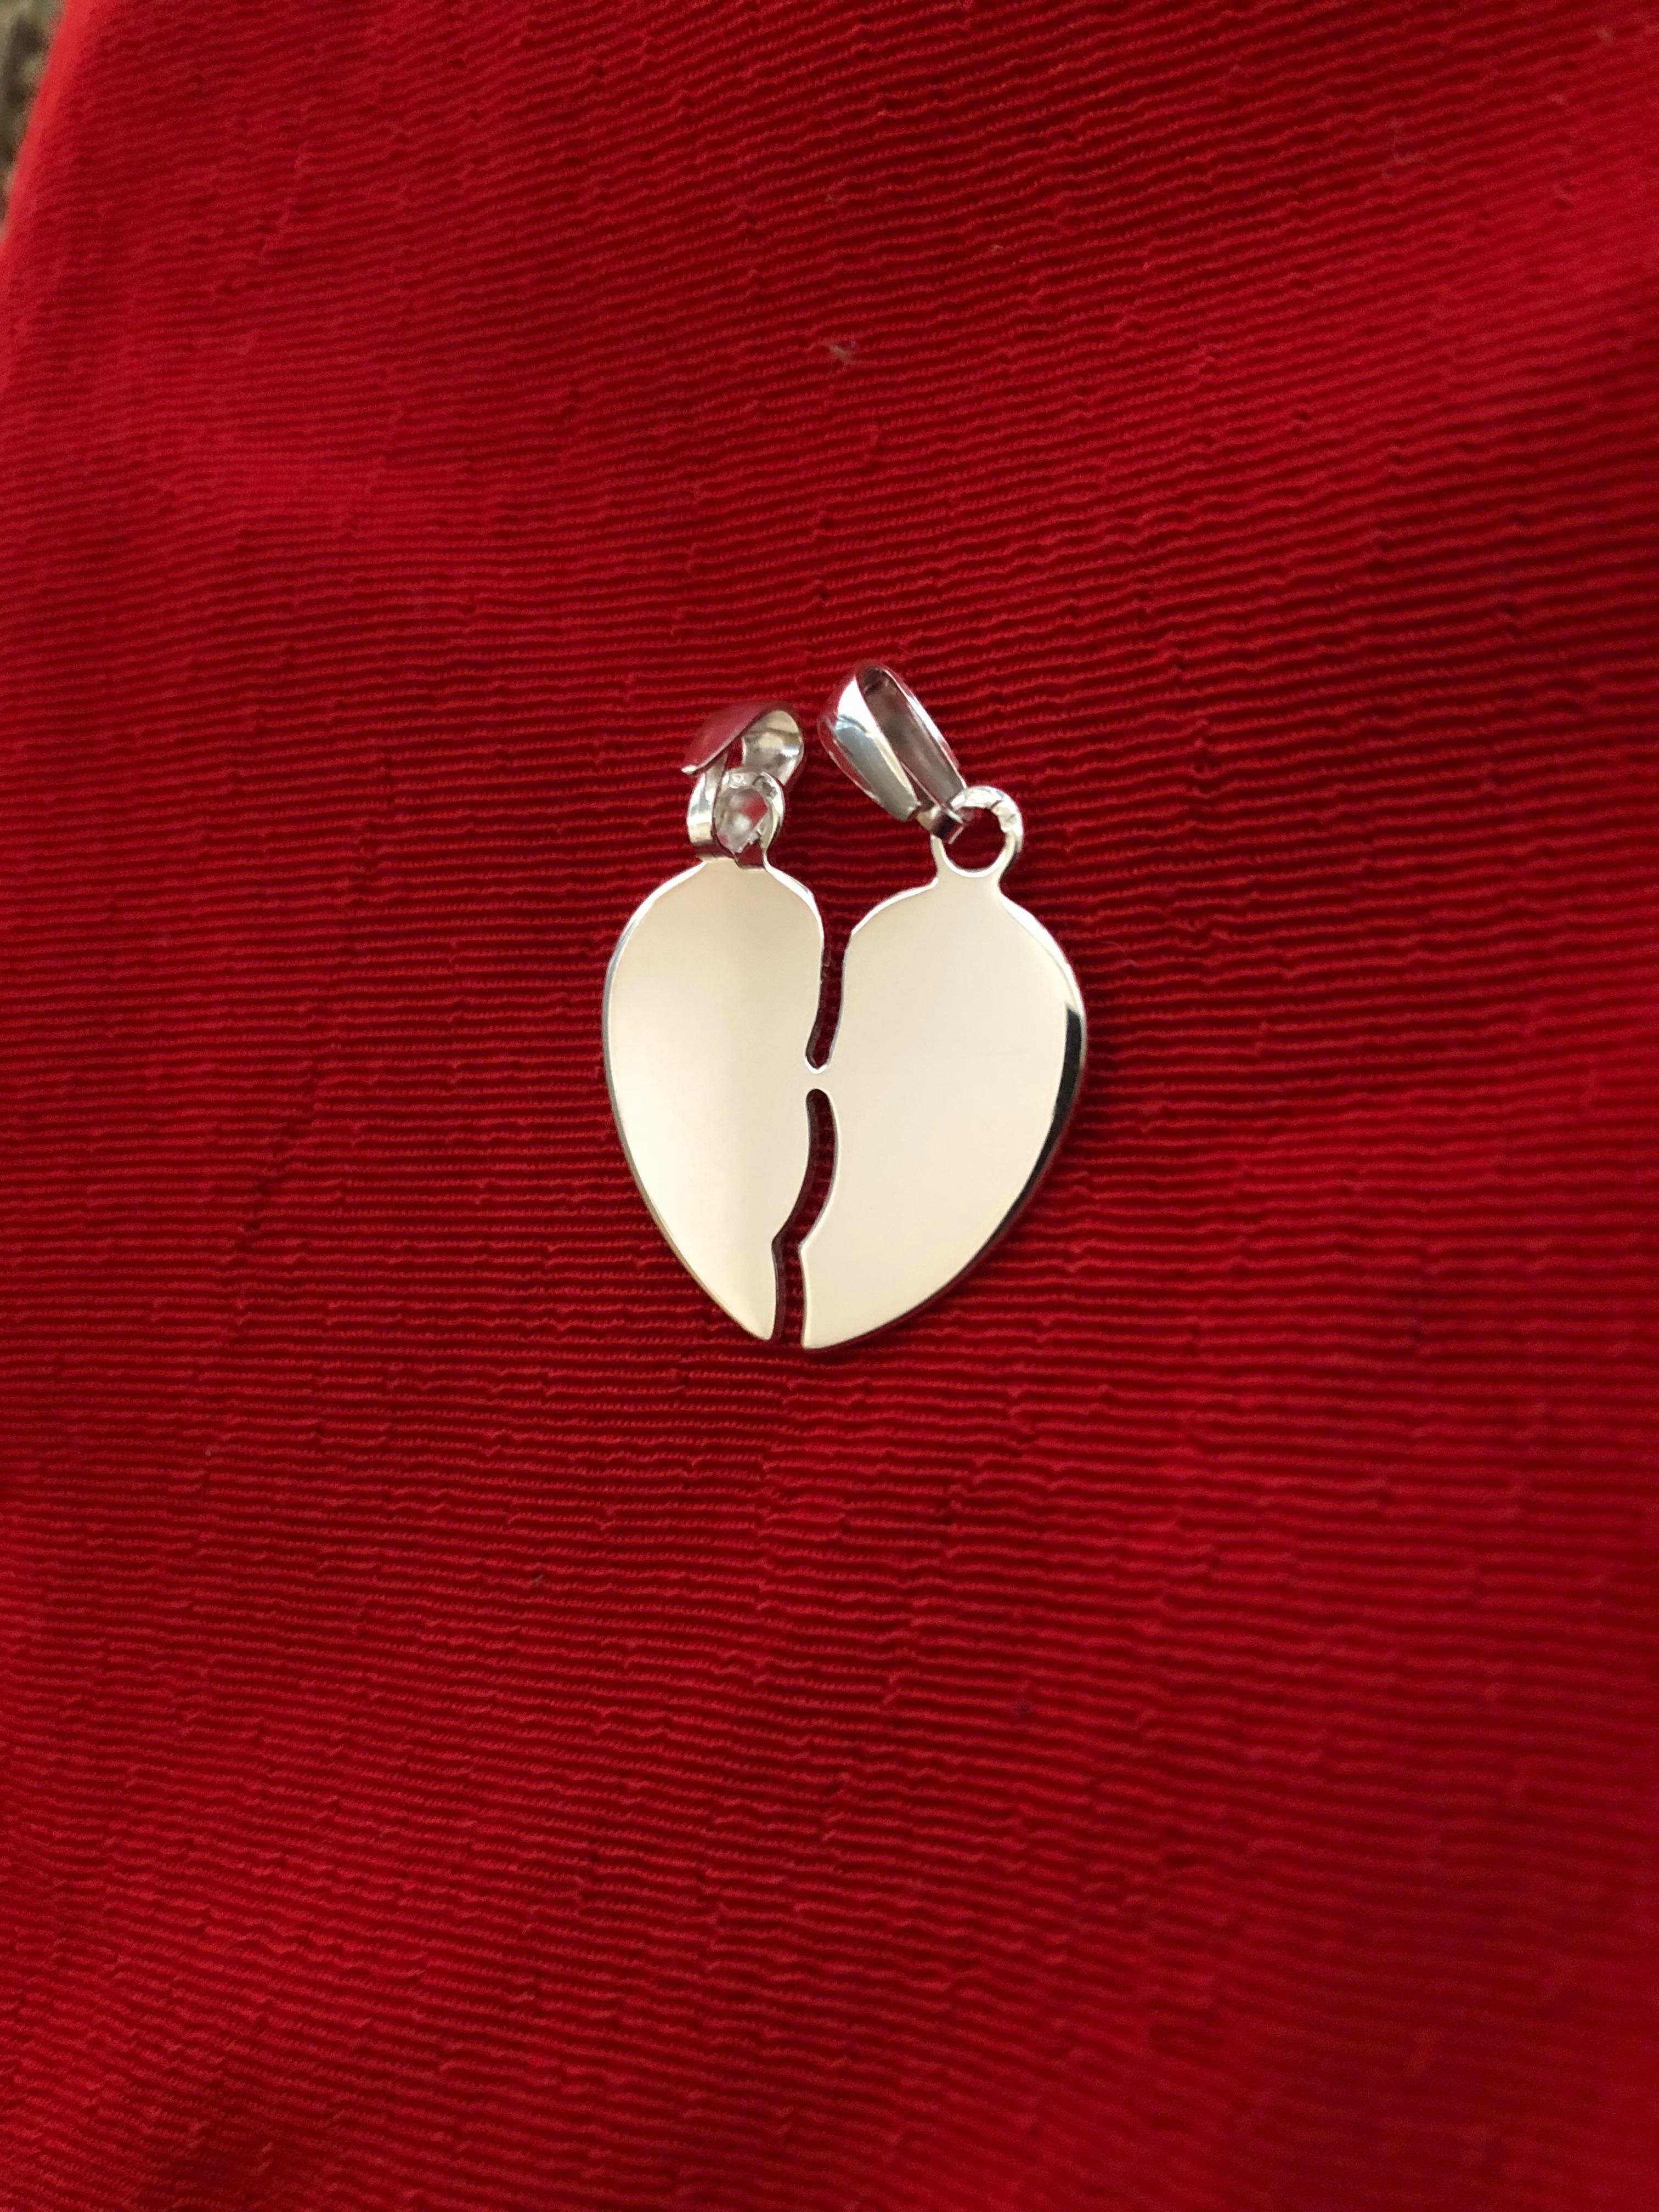 2 pendentes em prata - 1 coração, 2 metades - Novo